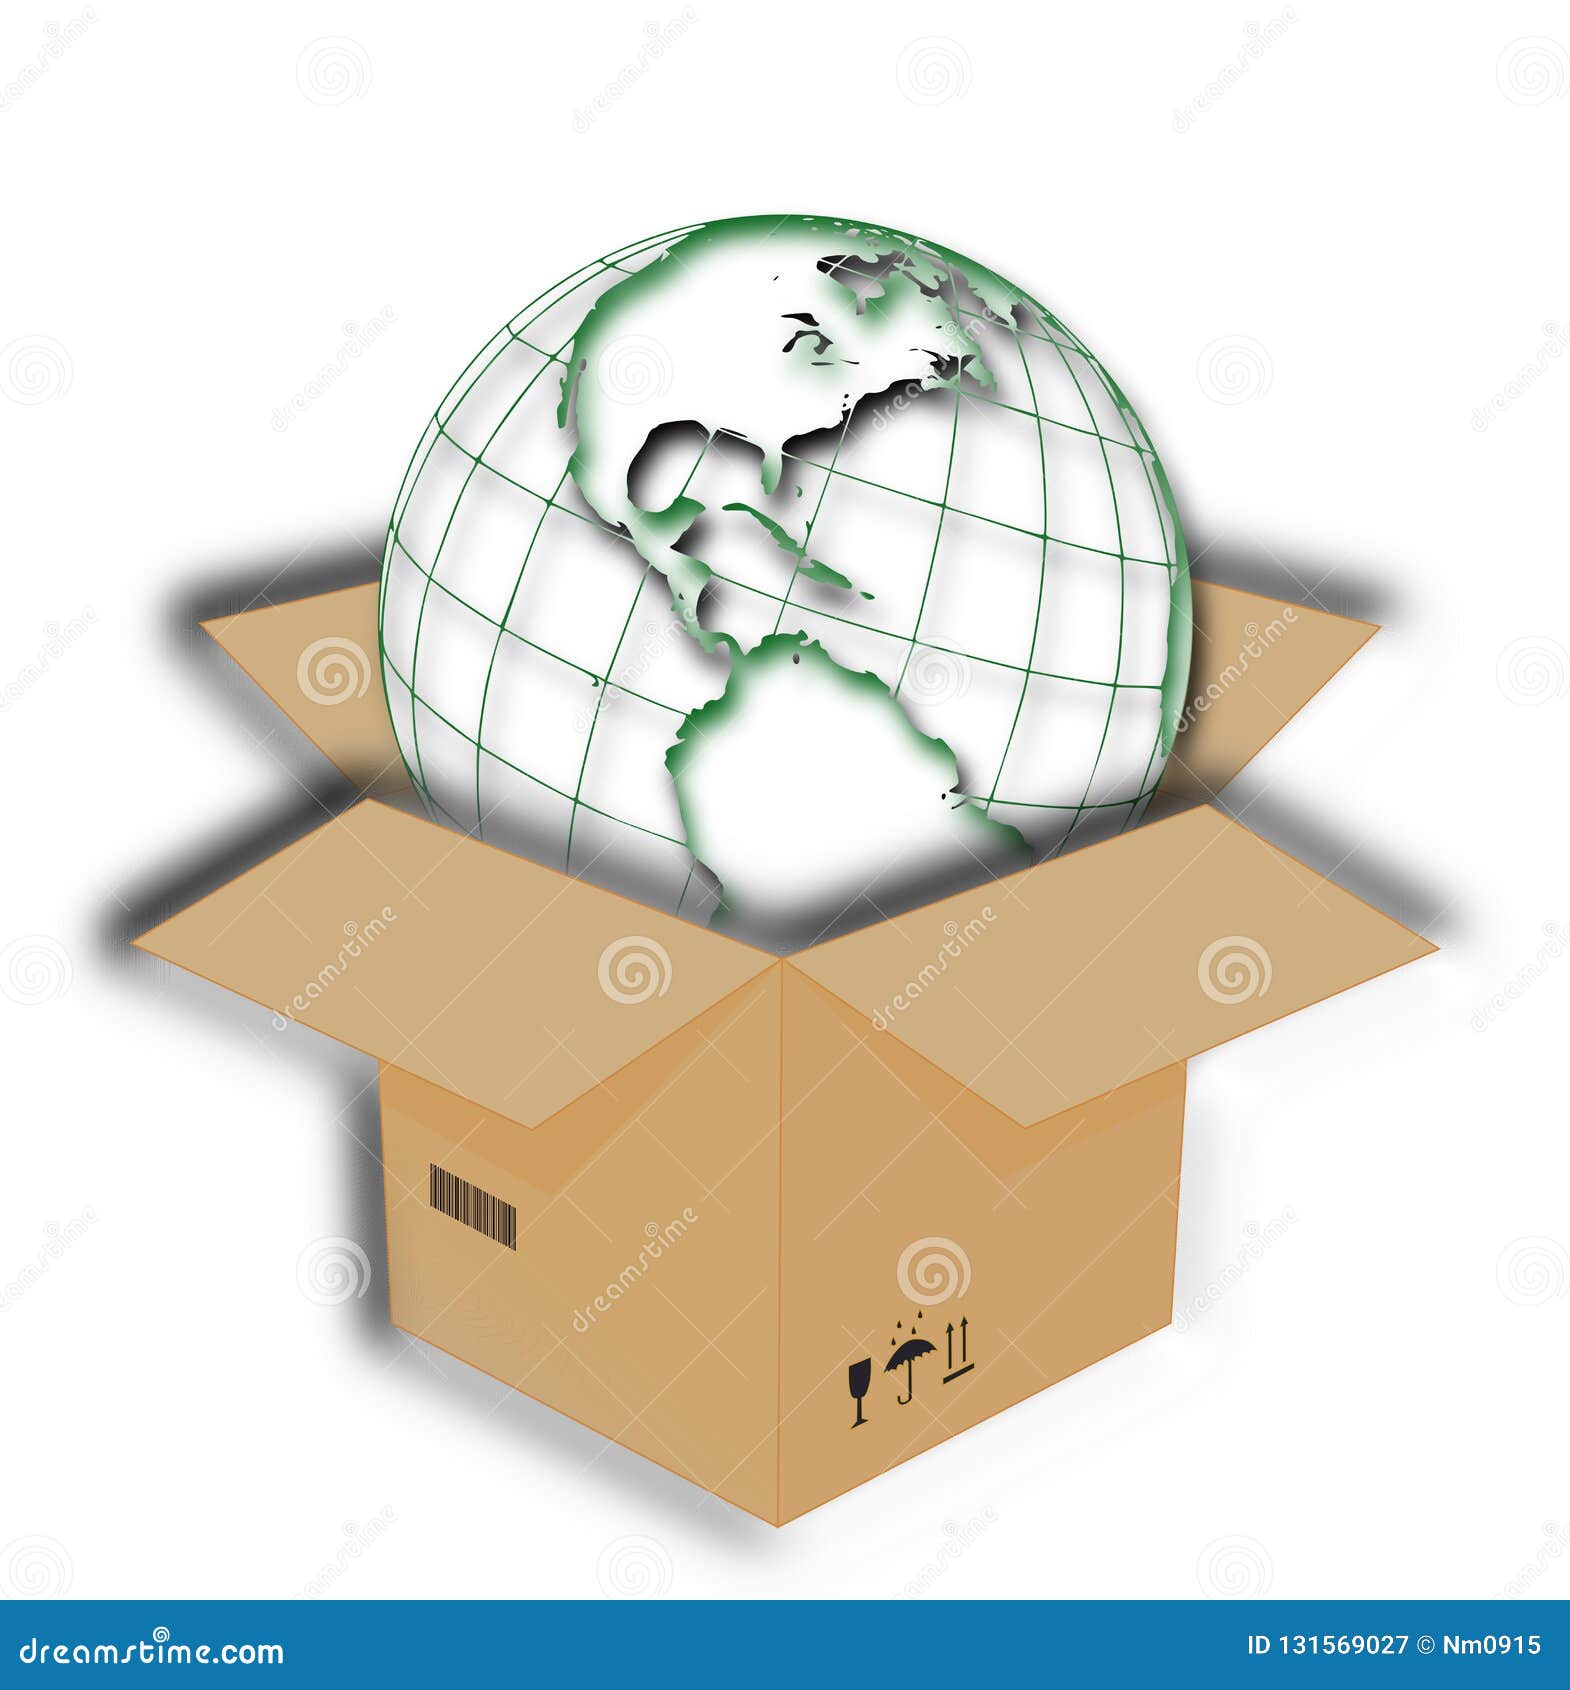 ÃÂ lanet earth in the box orient occident